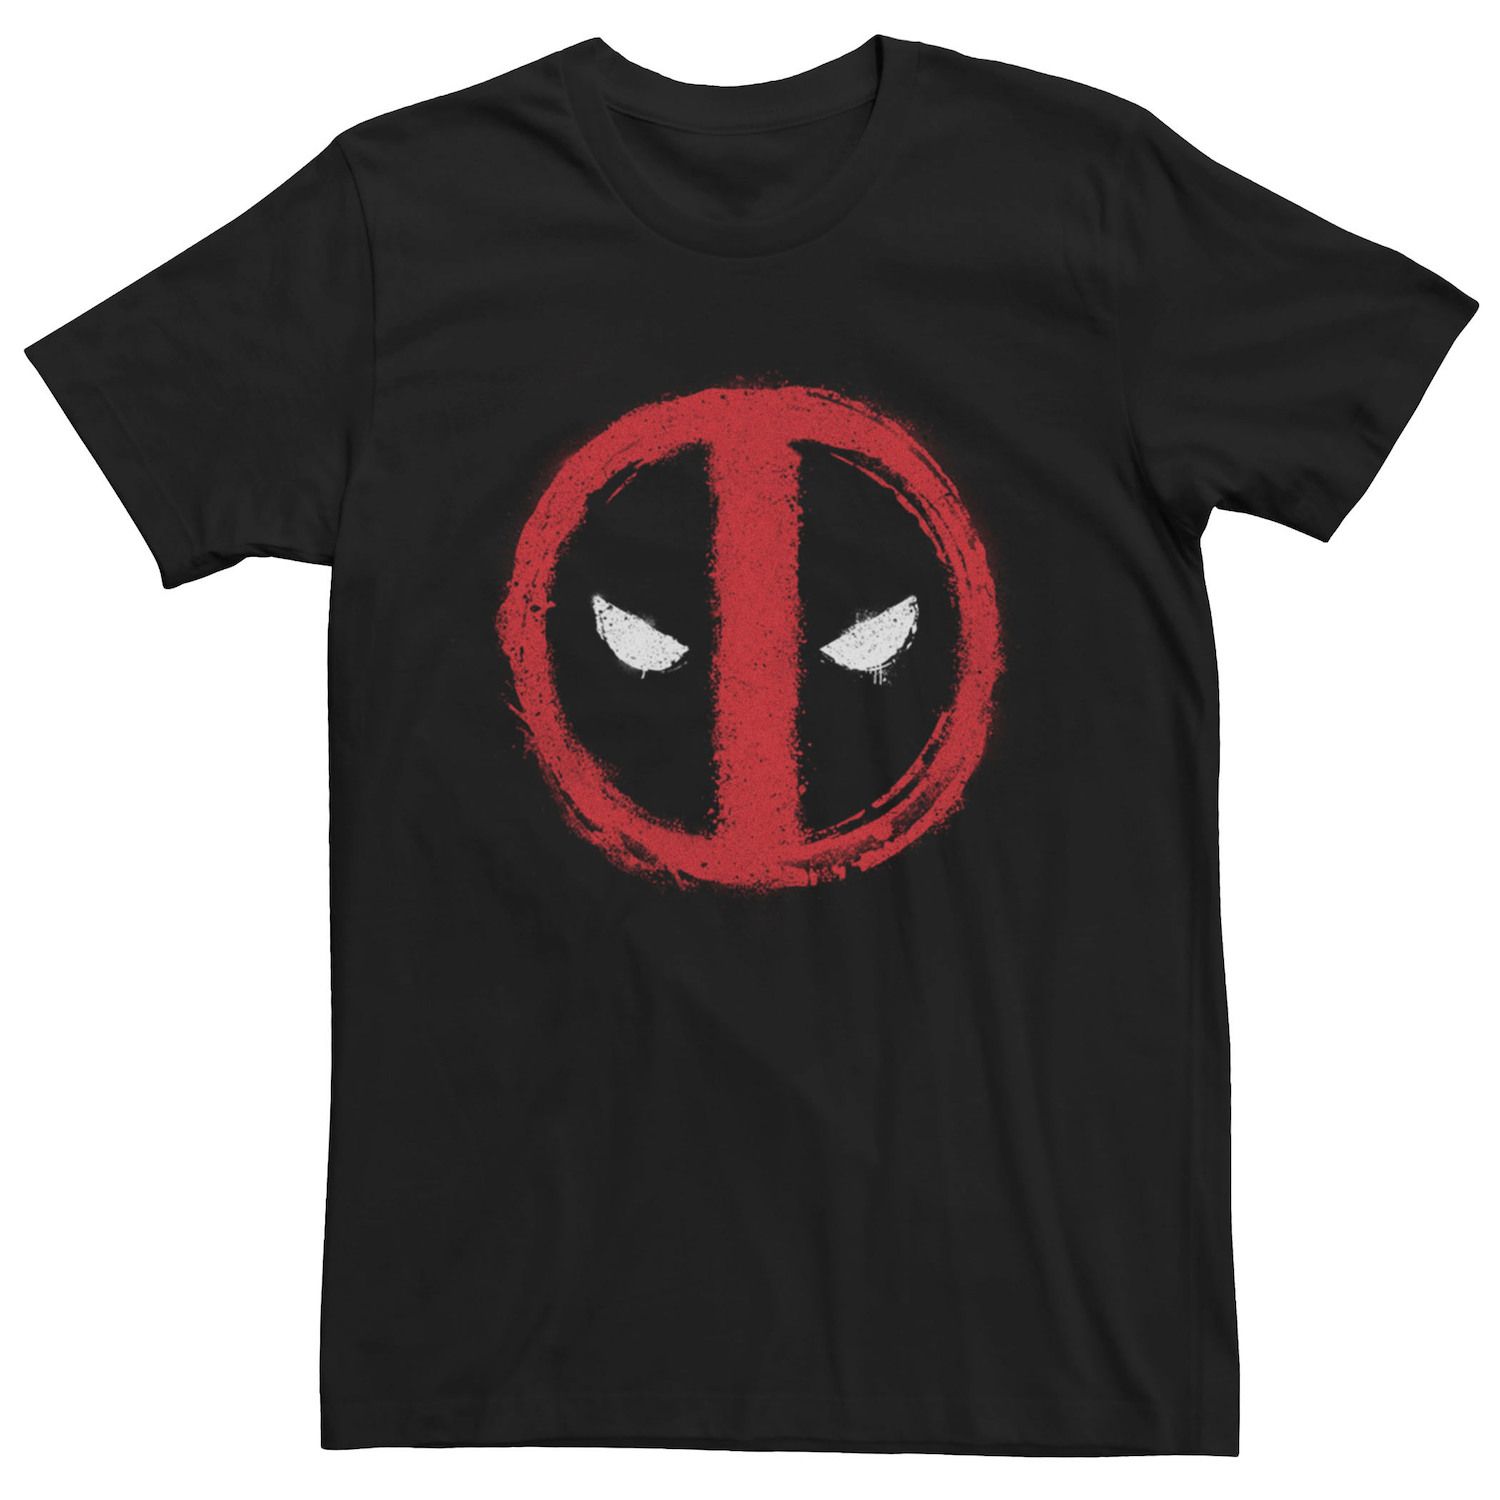 Мужская футболка с меловым логотипом Deadpool Marvel